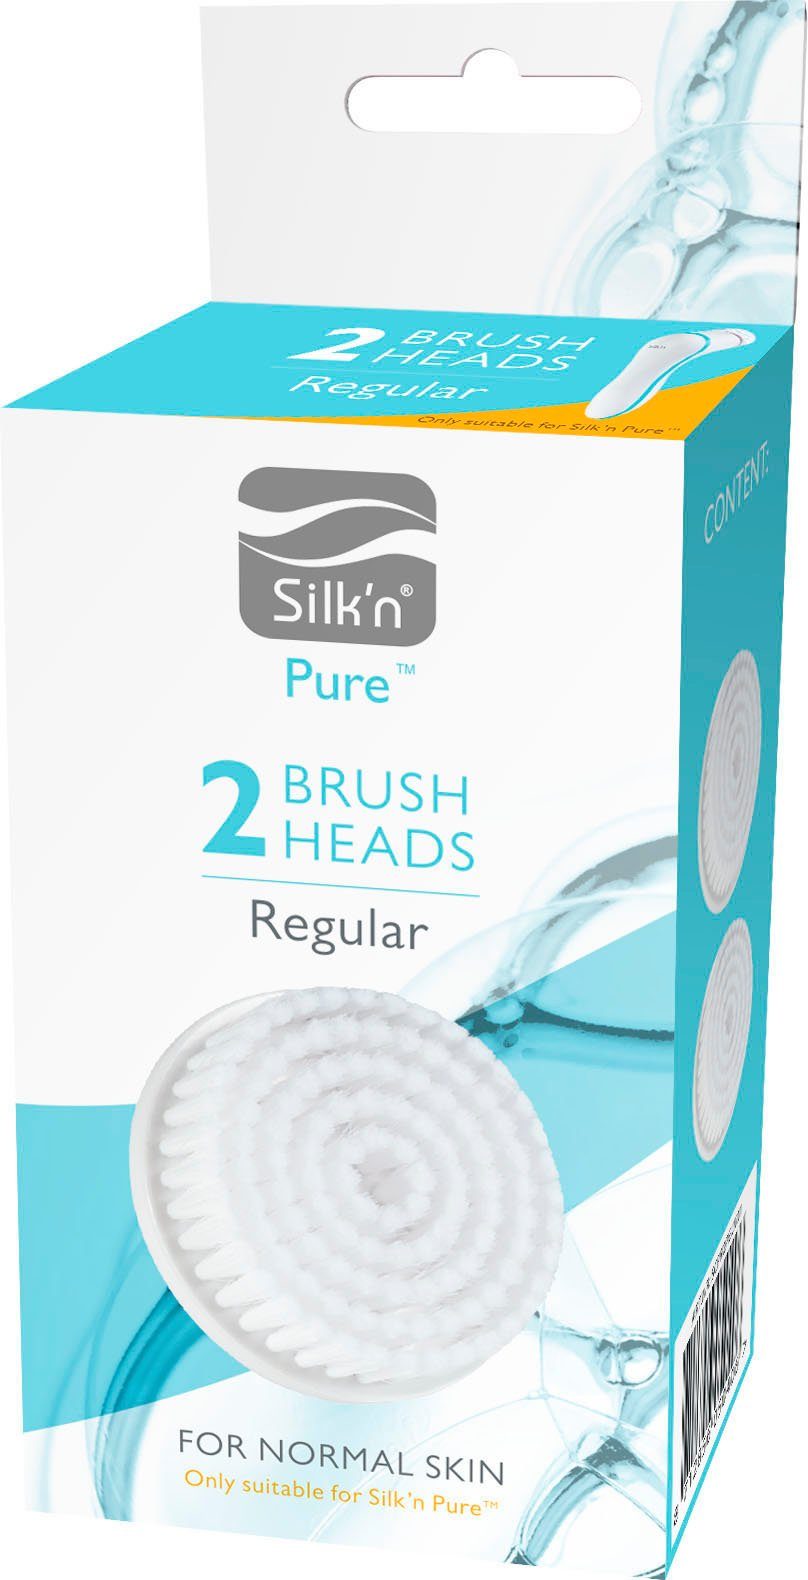 Regular, 2-tlg., Gesichtsbürstenaufsatz Set, Deluxe Pure und Pure Silk`n für Silk'n